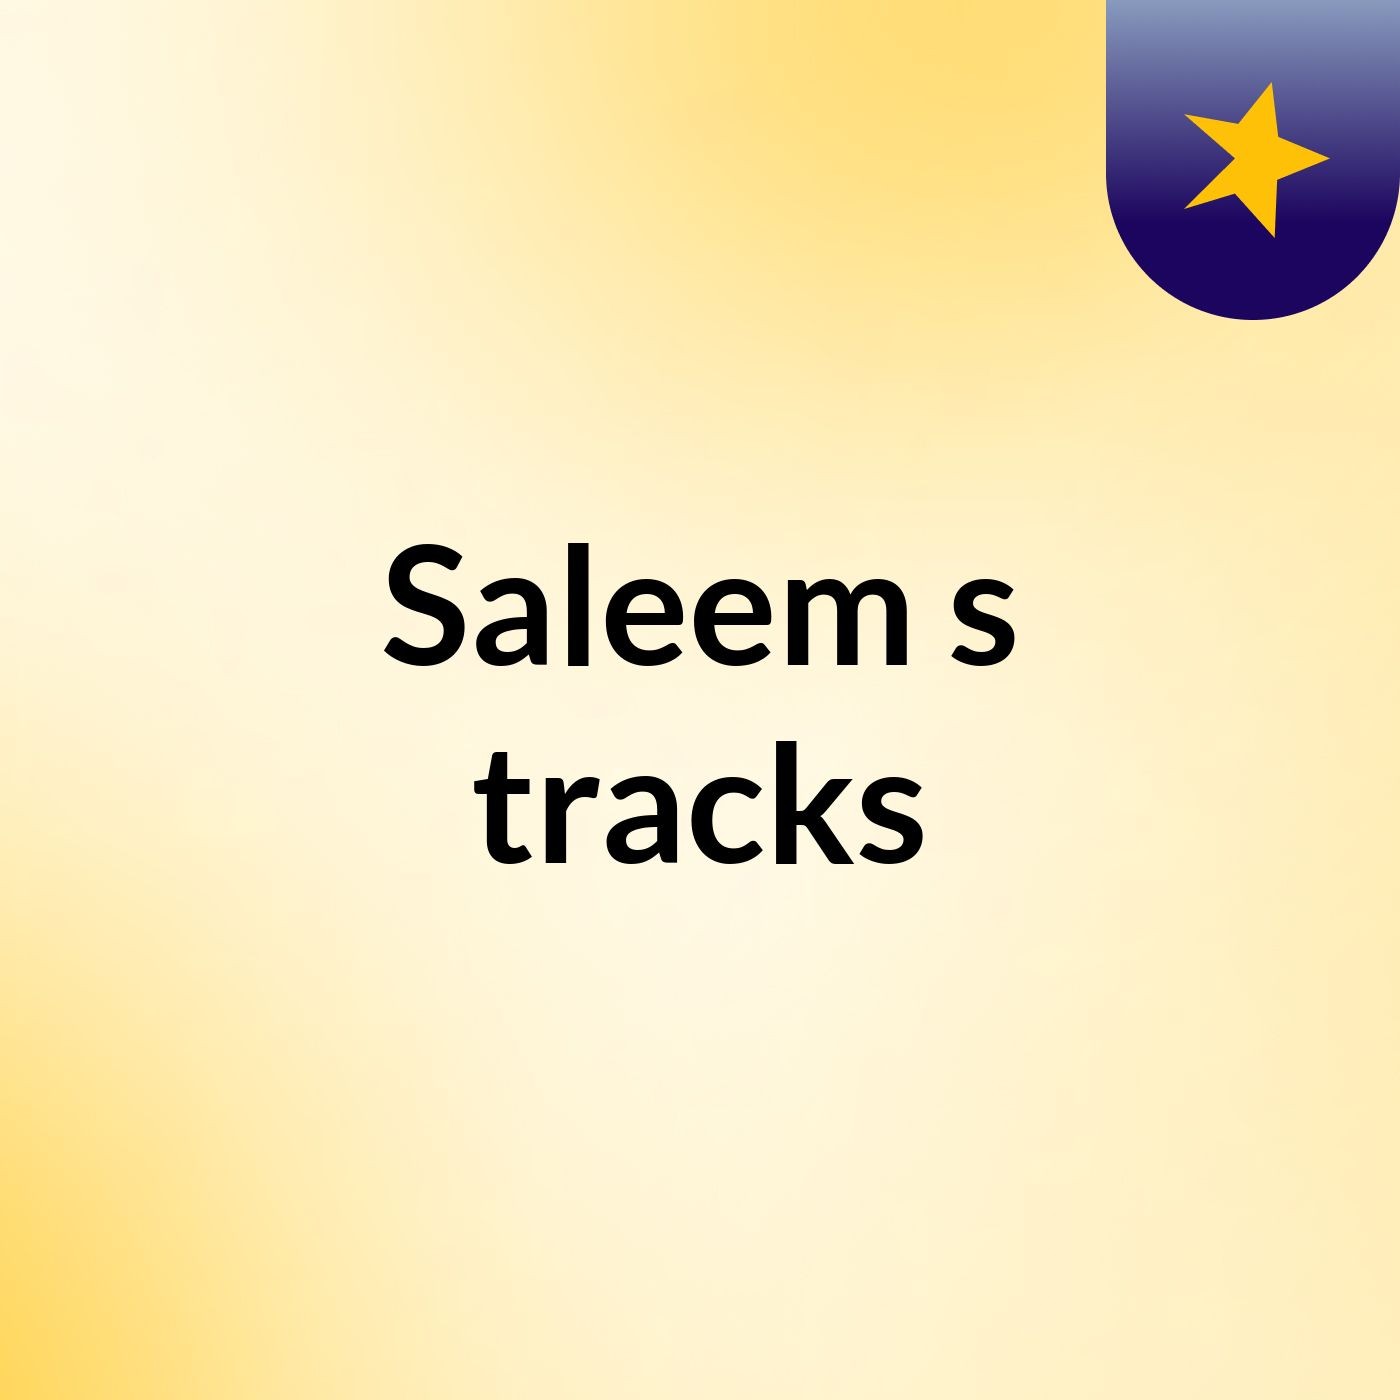 Saleem's tracks